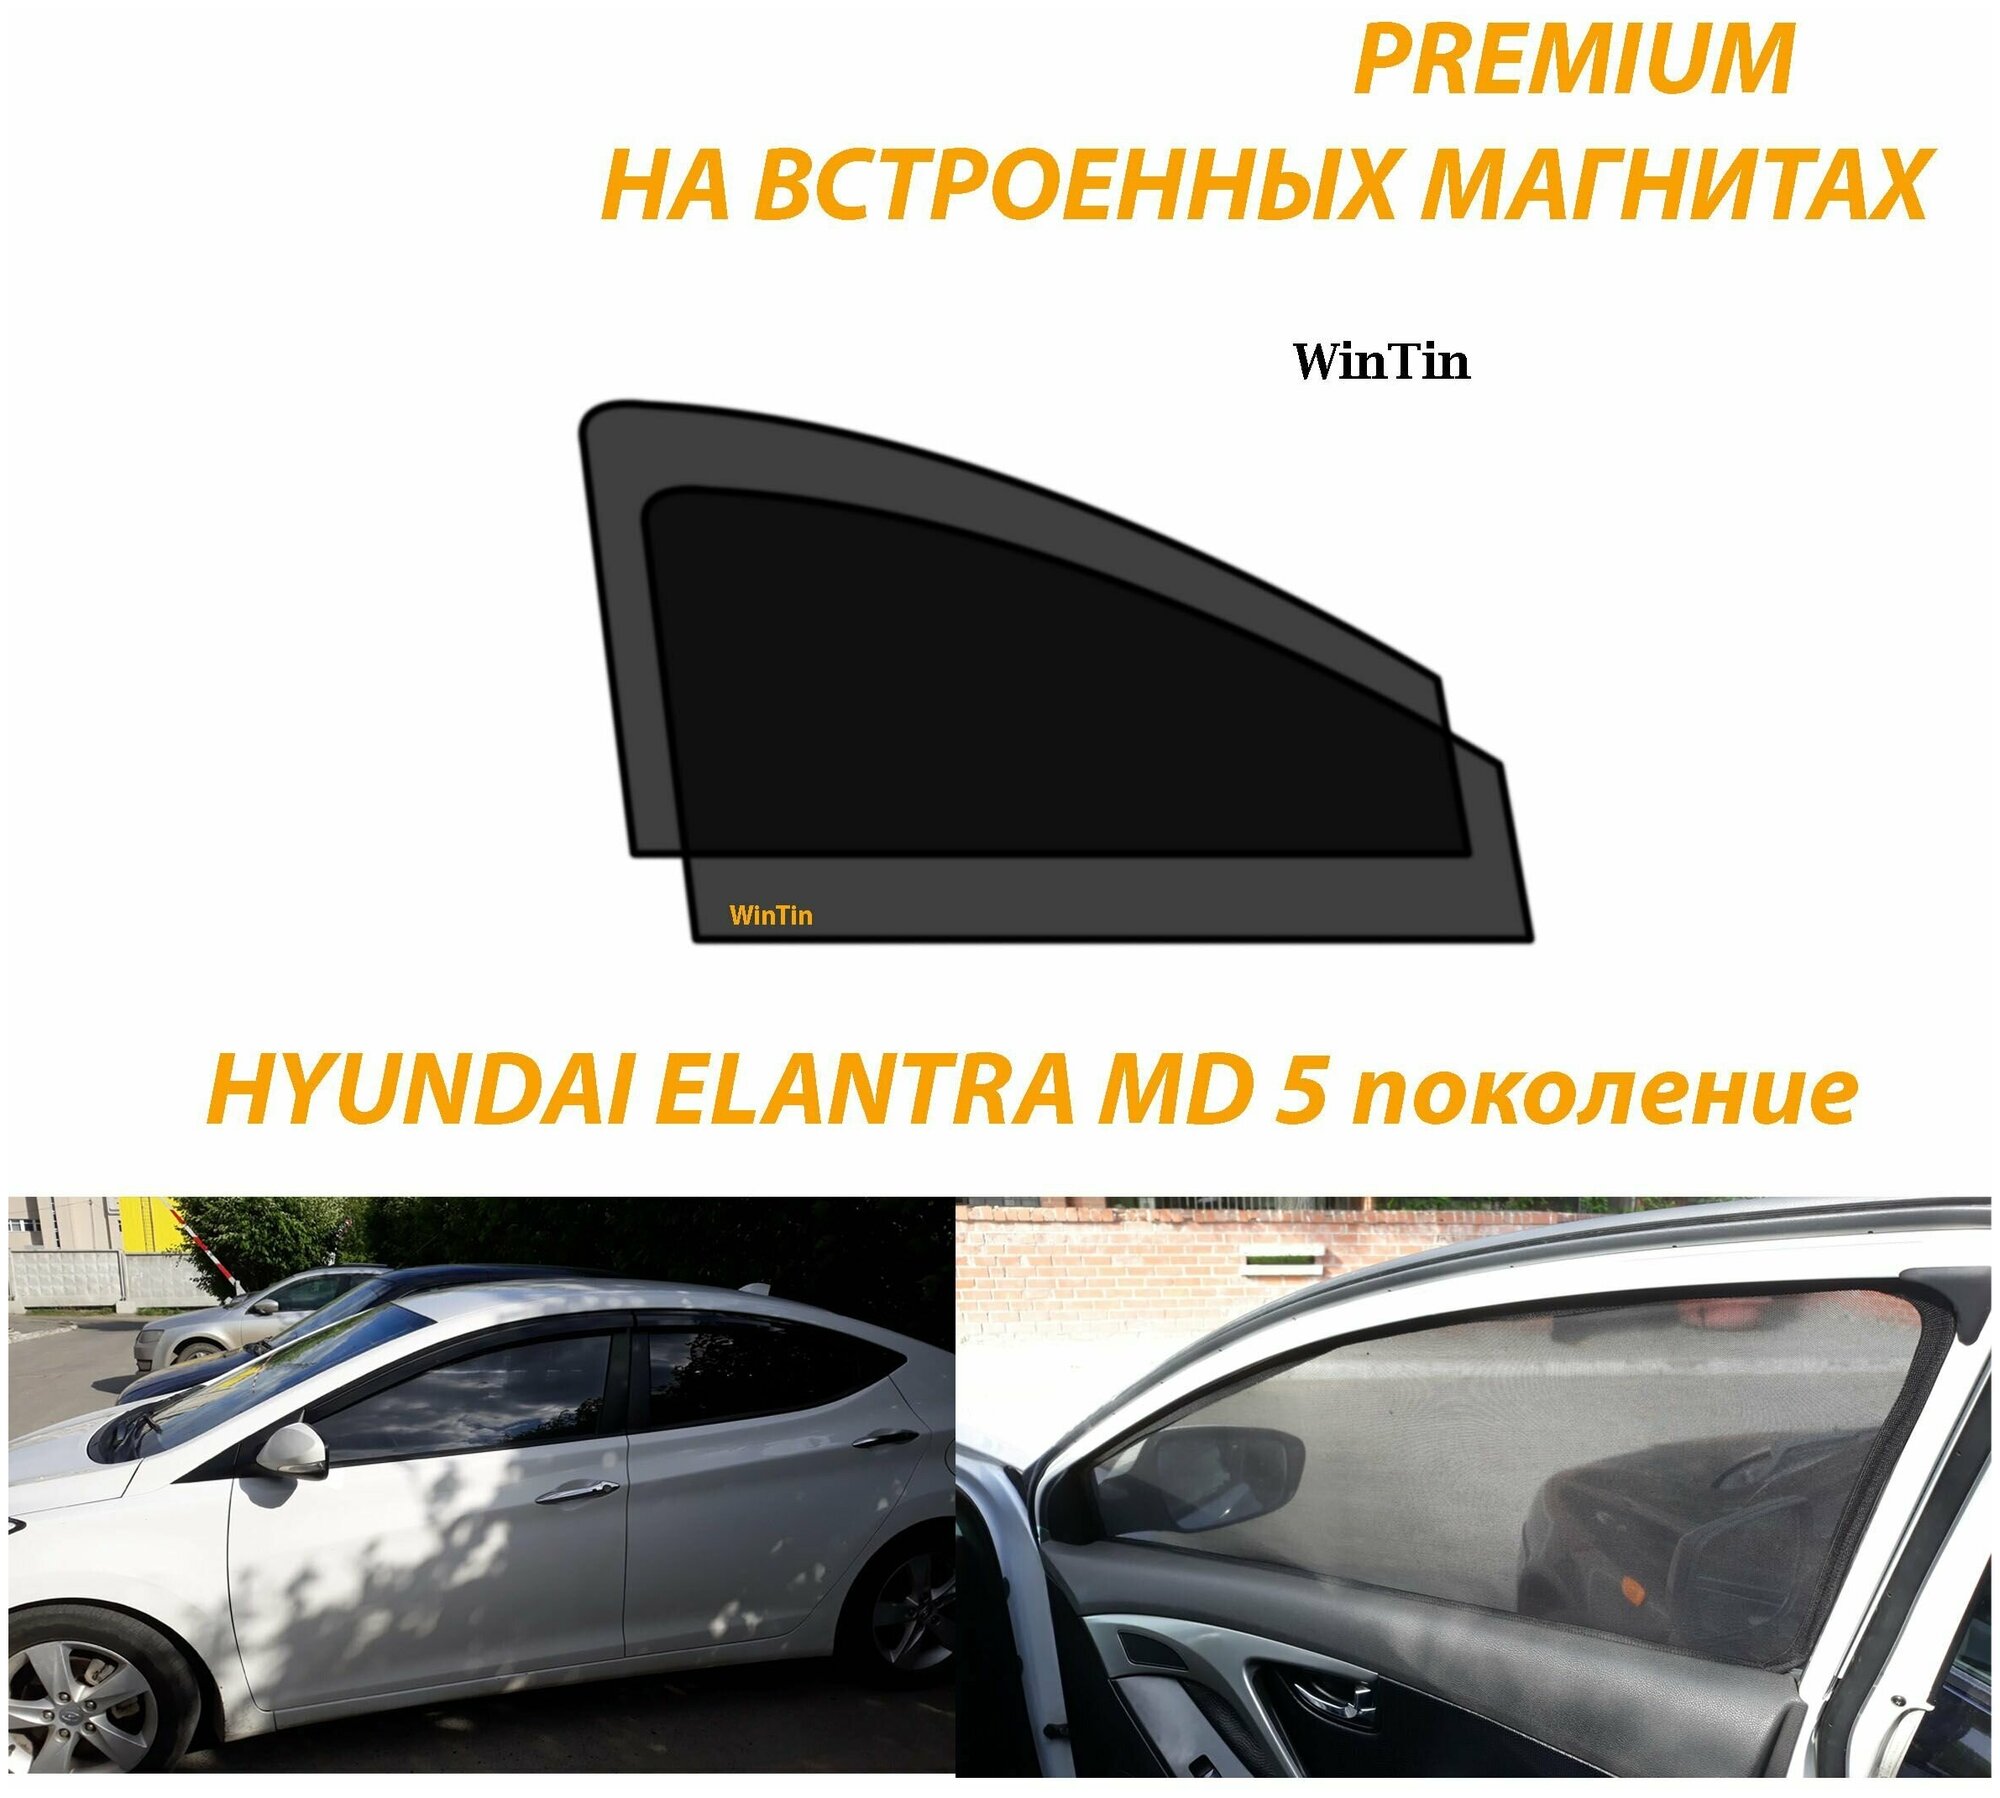 Солнцезащитные автомобильные каркасные шторки на Hyundai Elantra V MD 2010-2016 г. выпуска